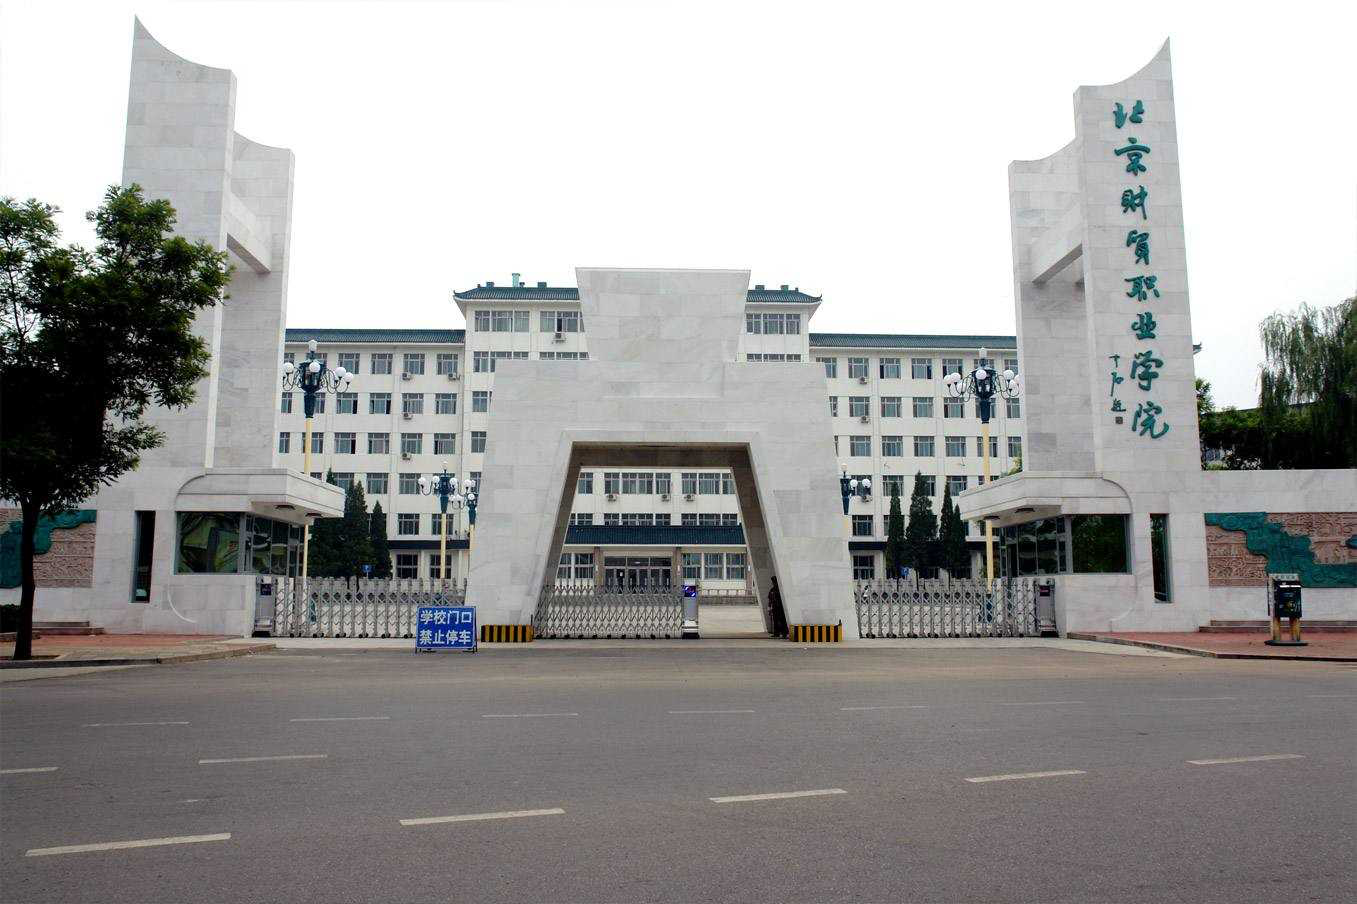 北京財貿職業學院